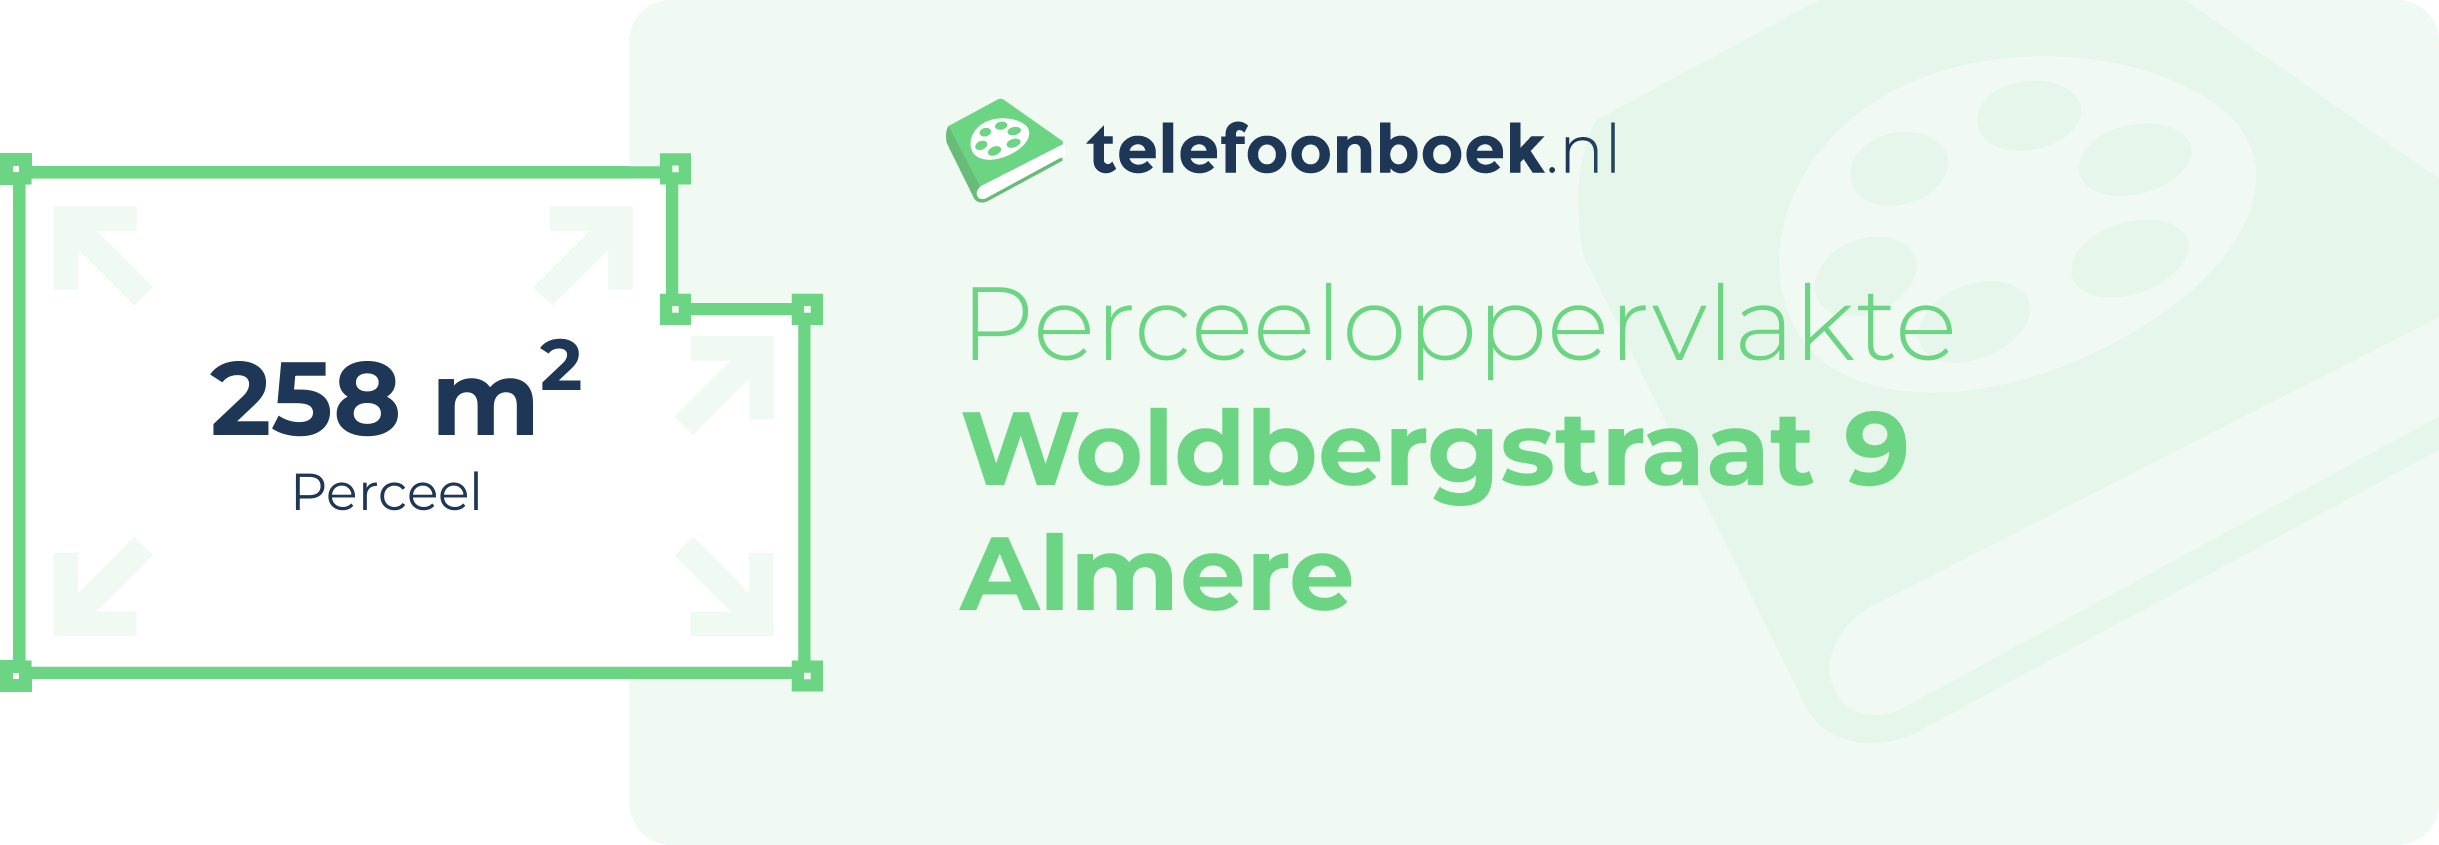 Perceeloppervlakte Woldbergstraat 9 Almere